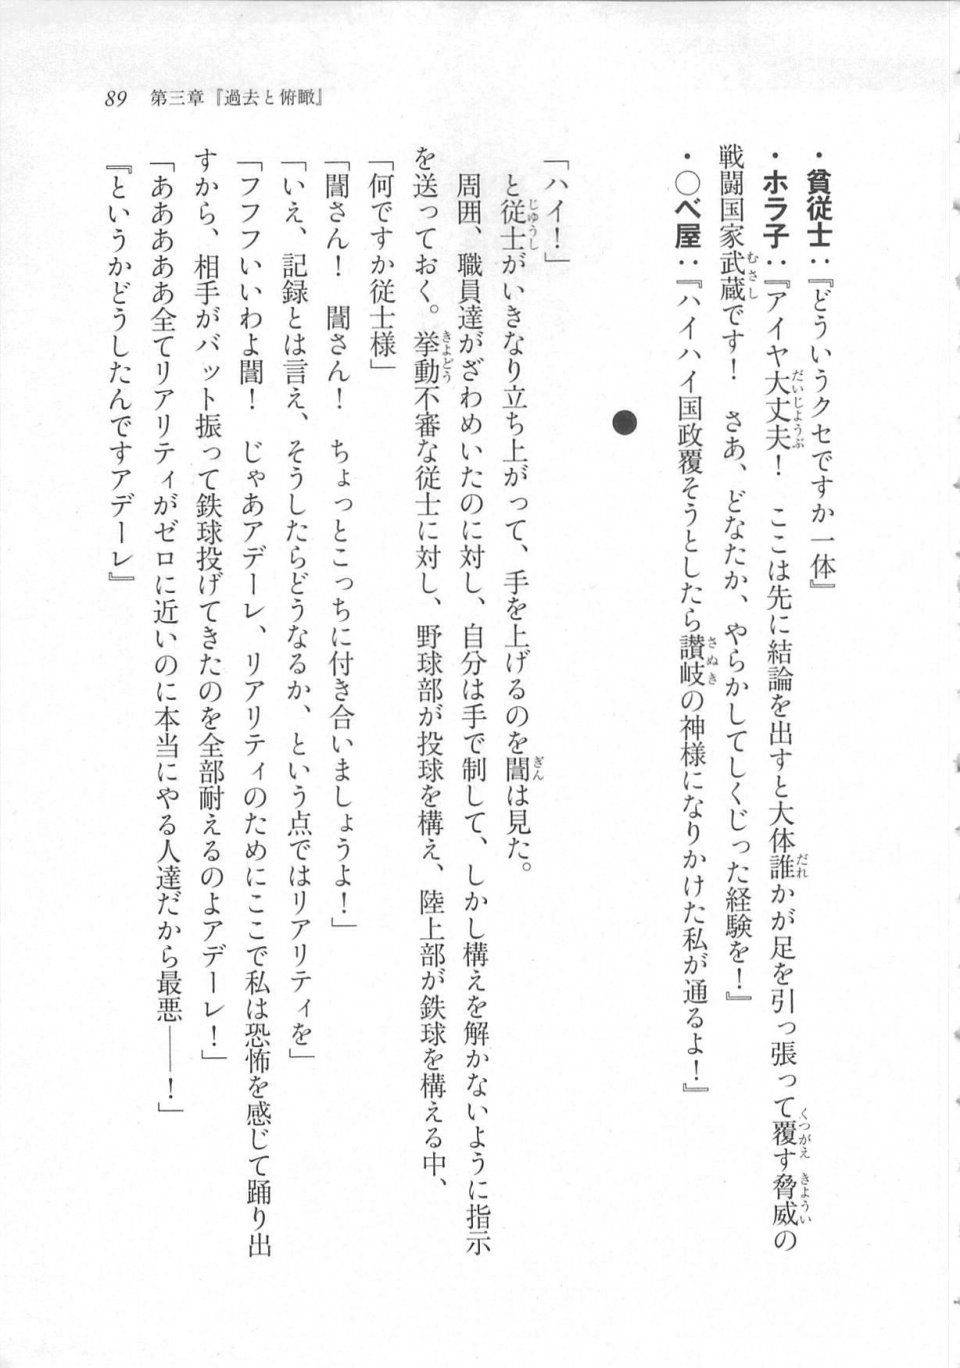 Kyoukai Senjou no Horizon LN Sidestory Vol 3 - Photo #93